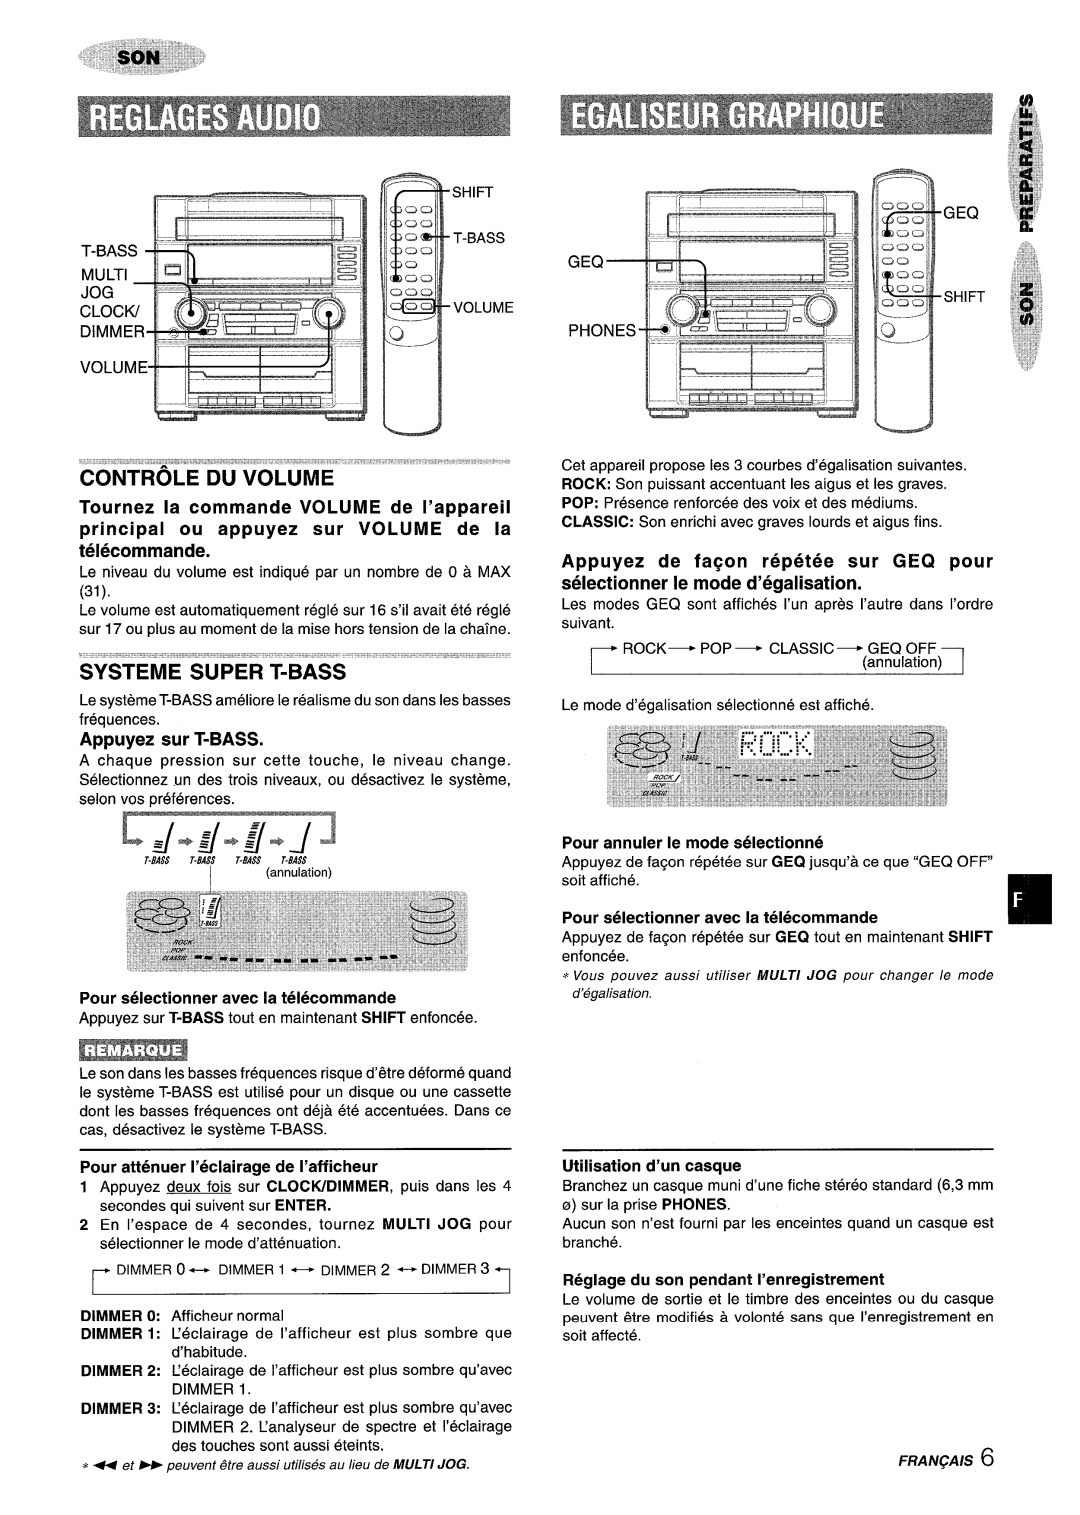 Aiwa Z-R555 manual Tournez la commande VOLUME de I’appareil, principal ou appuyez sur VOLUME de la telecommande 